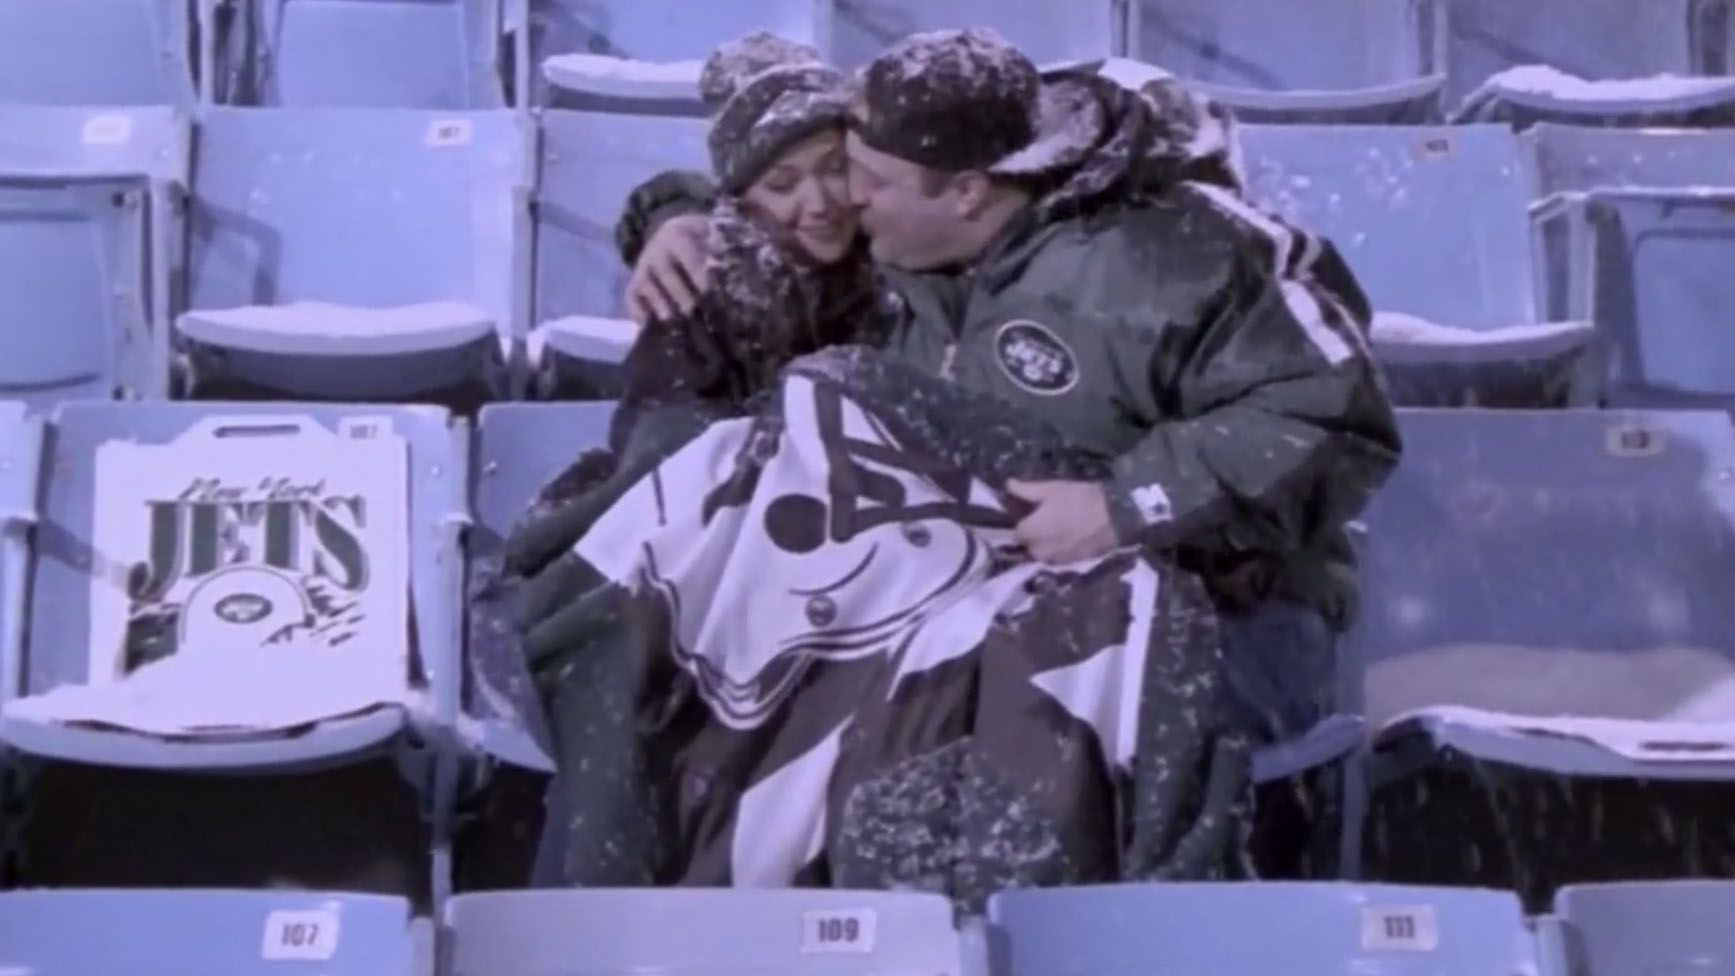 
                <strong>New York Jets - Doug Heffernan ("The King of Queens")</strong><br>
                Die Wahl eines fiktiven Fans der New York Jets ist denkbar einfach: Doug Heffernan, Hauptfigur der Sitcom "The King of Queens" ist New Yorker durch und durch und lebt für die "Gang Green". Den Heiratsantrag für seine Carrie führt Doug selbstverständlich im Stadion der Jets aus und auch Weihnachtsschmuck der Miami Dolphins kommt dem Paketzusteller nicht ins Haus. Auch im echten Leben drückt Schauspieler Kevin James den Jets die Daumen, seine Tochter Shea Joelle ist sogar nach der früheren Heimstätte der Jets und Mets (MLB; "Shea Stadium") benannt.Doug spielt Football (in den falschen Farben): https://www.youtube.com/watch?v=vmuMJDOnIDM
              